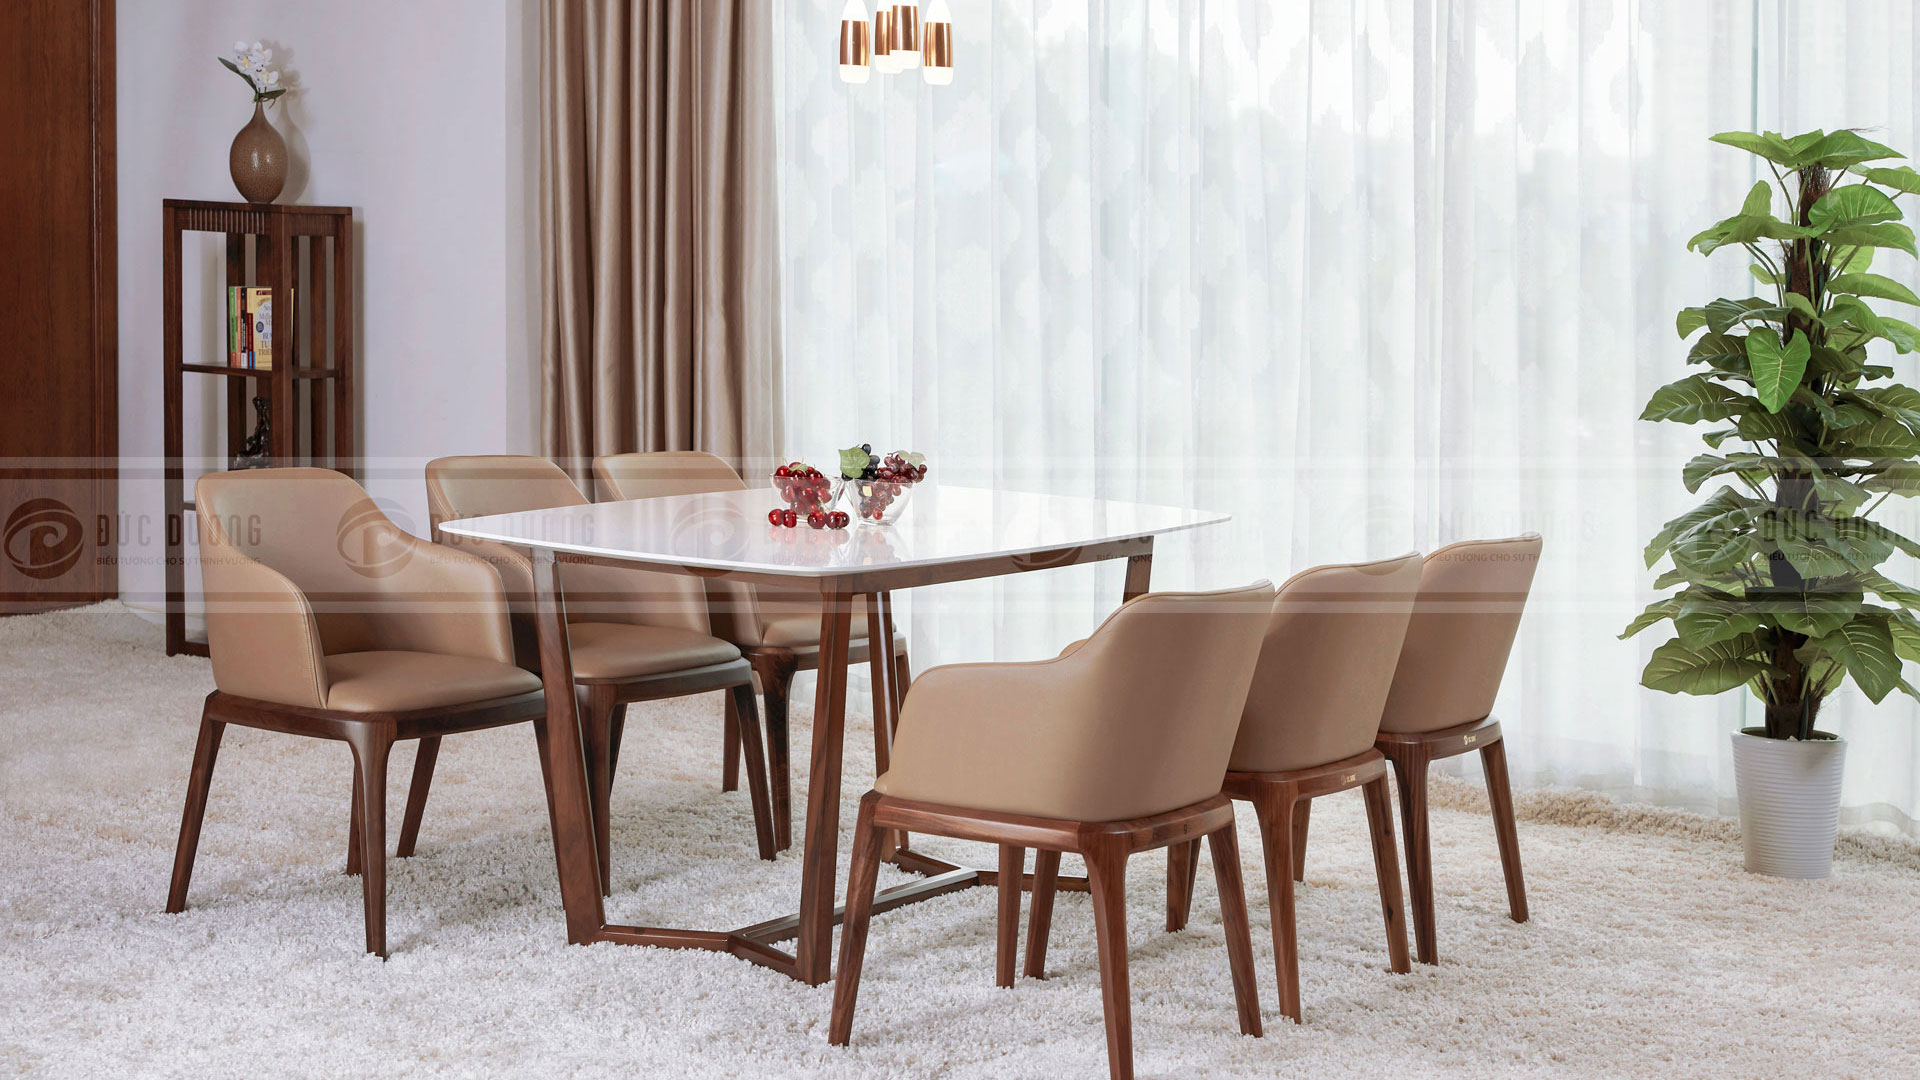 Mẫu bàn ăn 4 ghế đẹp phong cách hiện đại